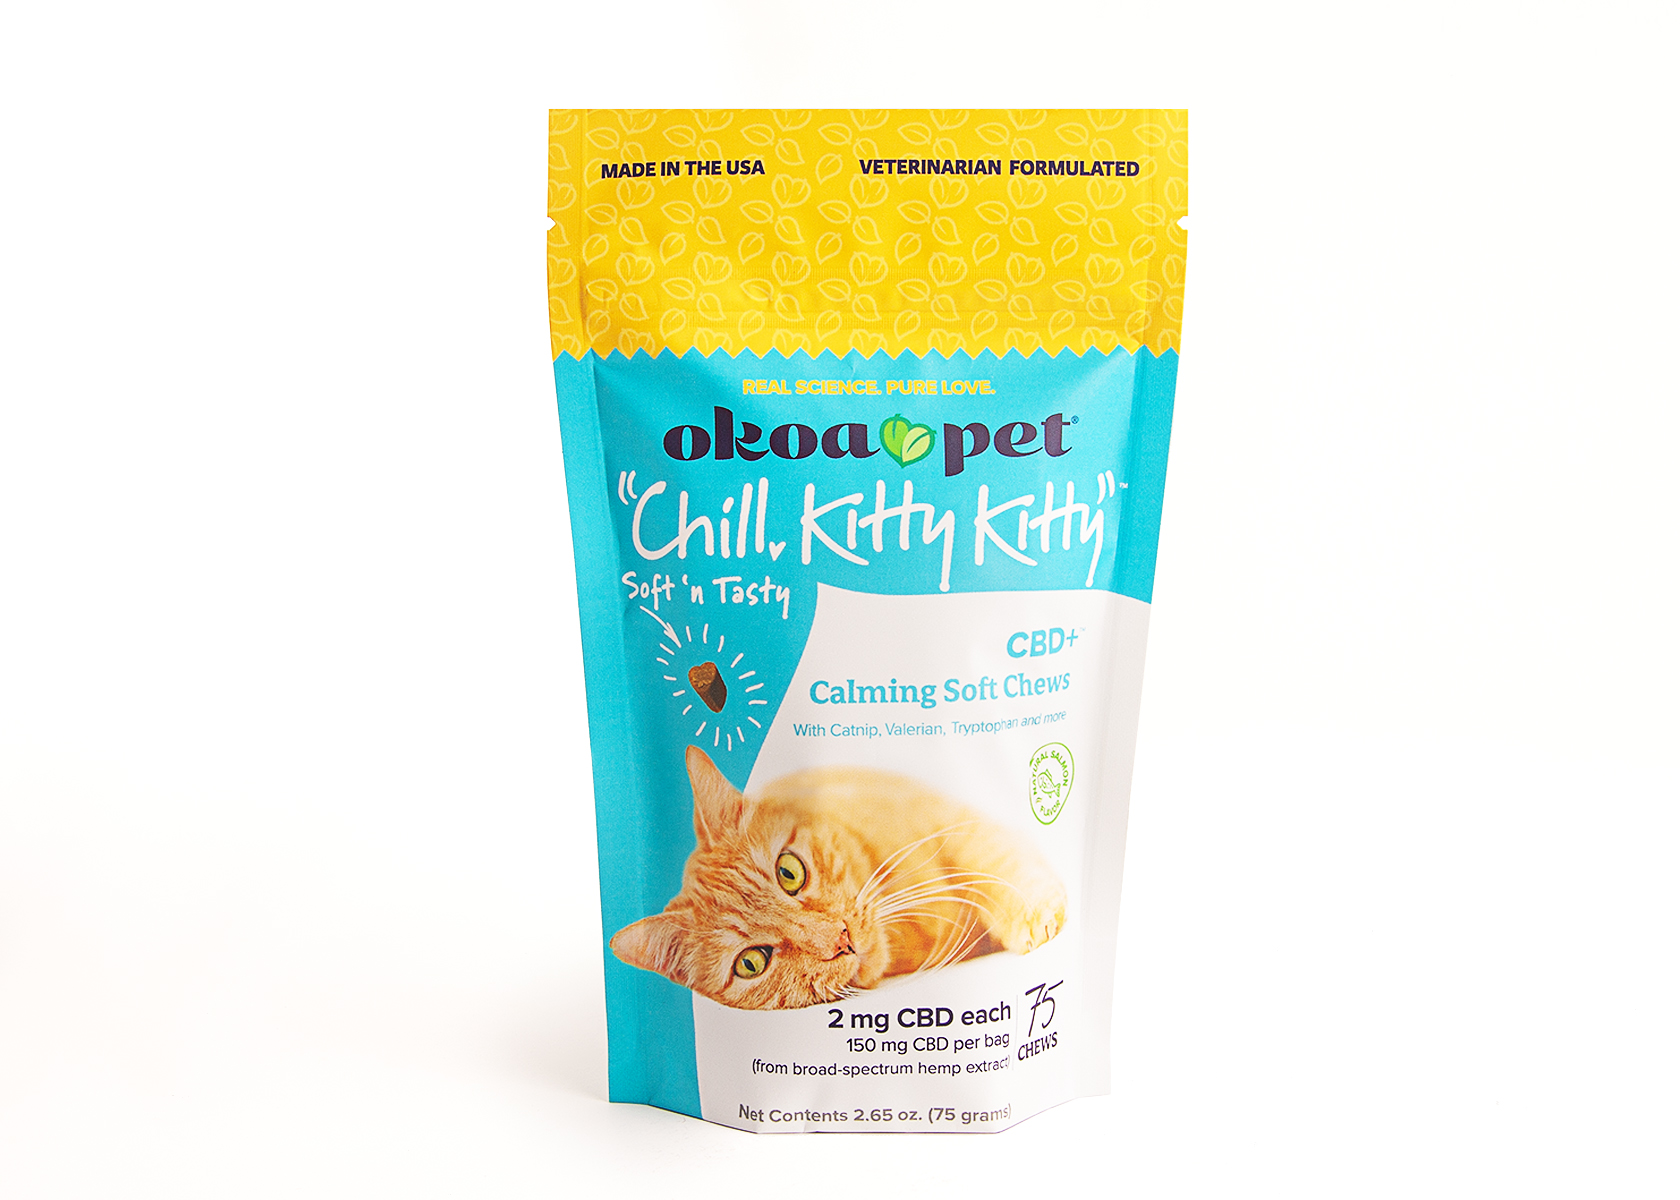 Okoa Pet Chill Kitty Kitty CBD+ Calming Treats for Cats front of bag